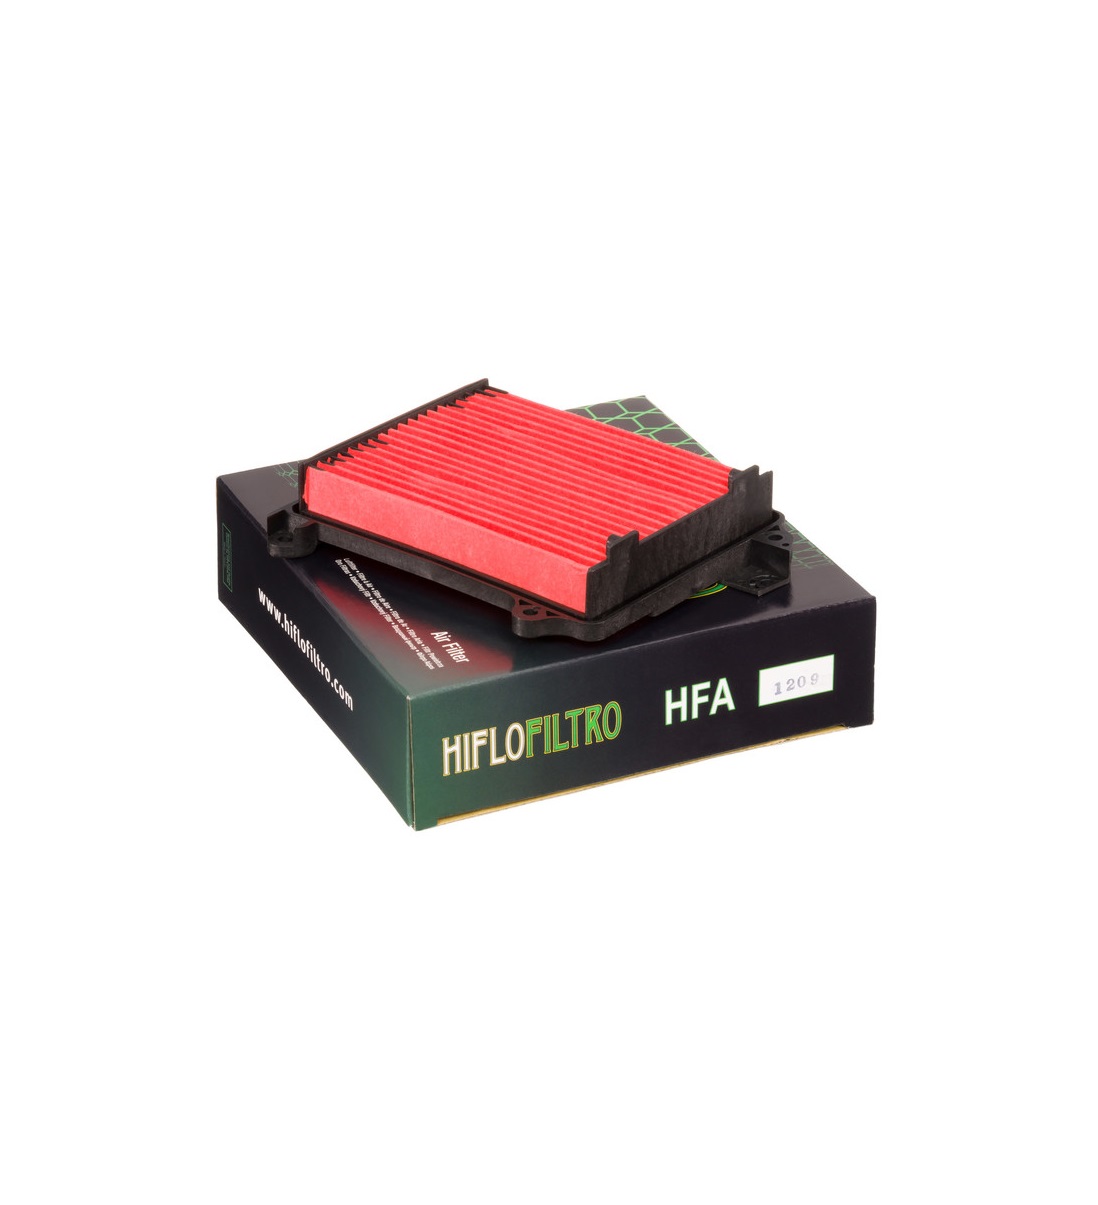 Hfa. Воздушный фильтр HIFLO hfa1715. 17210-Kaf-000 фильтр воздушный HIFLO. Hfa6201. 17210-Kaf-000 аналог HIFLO артикул.